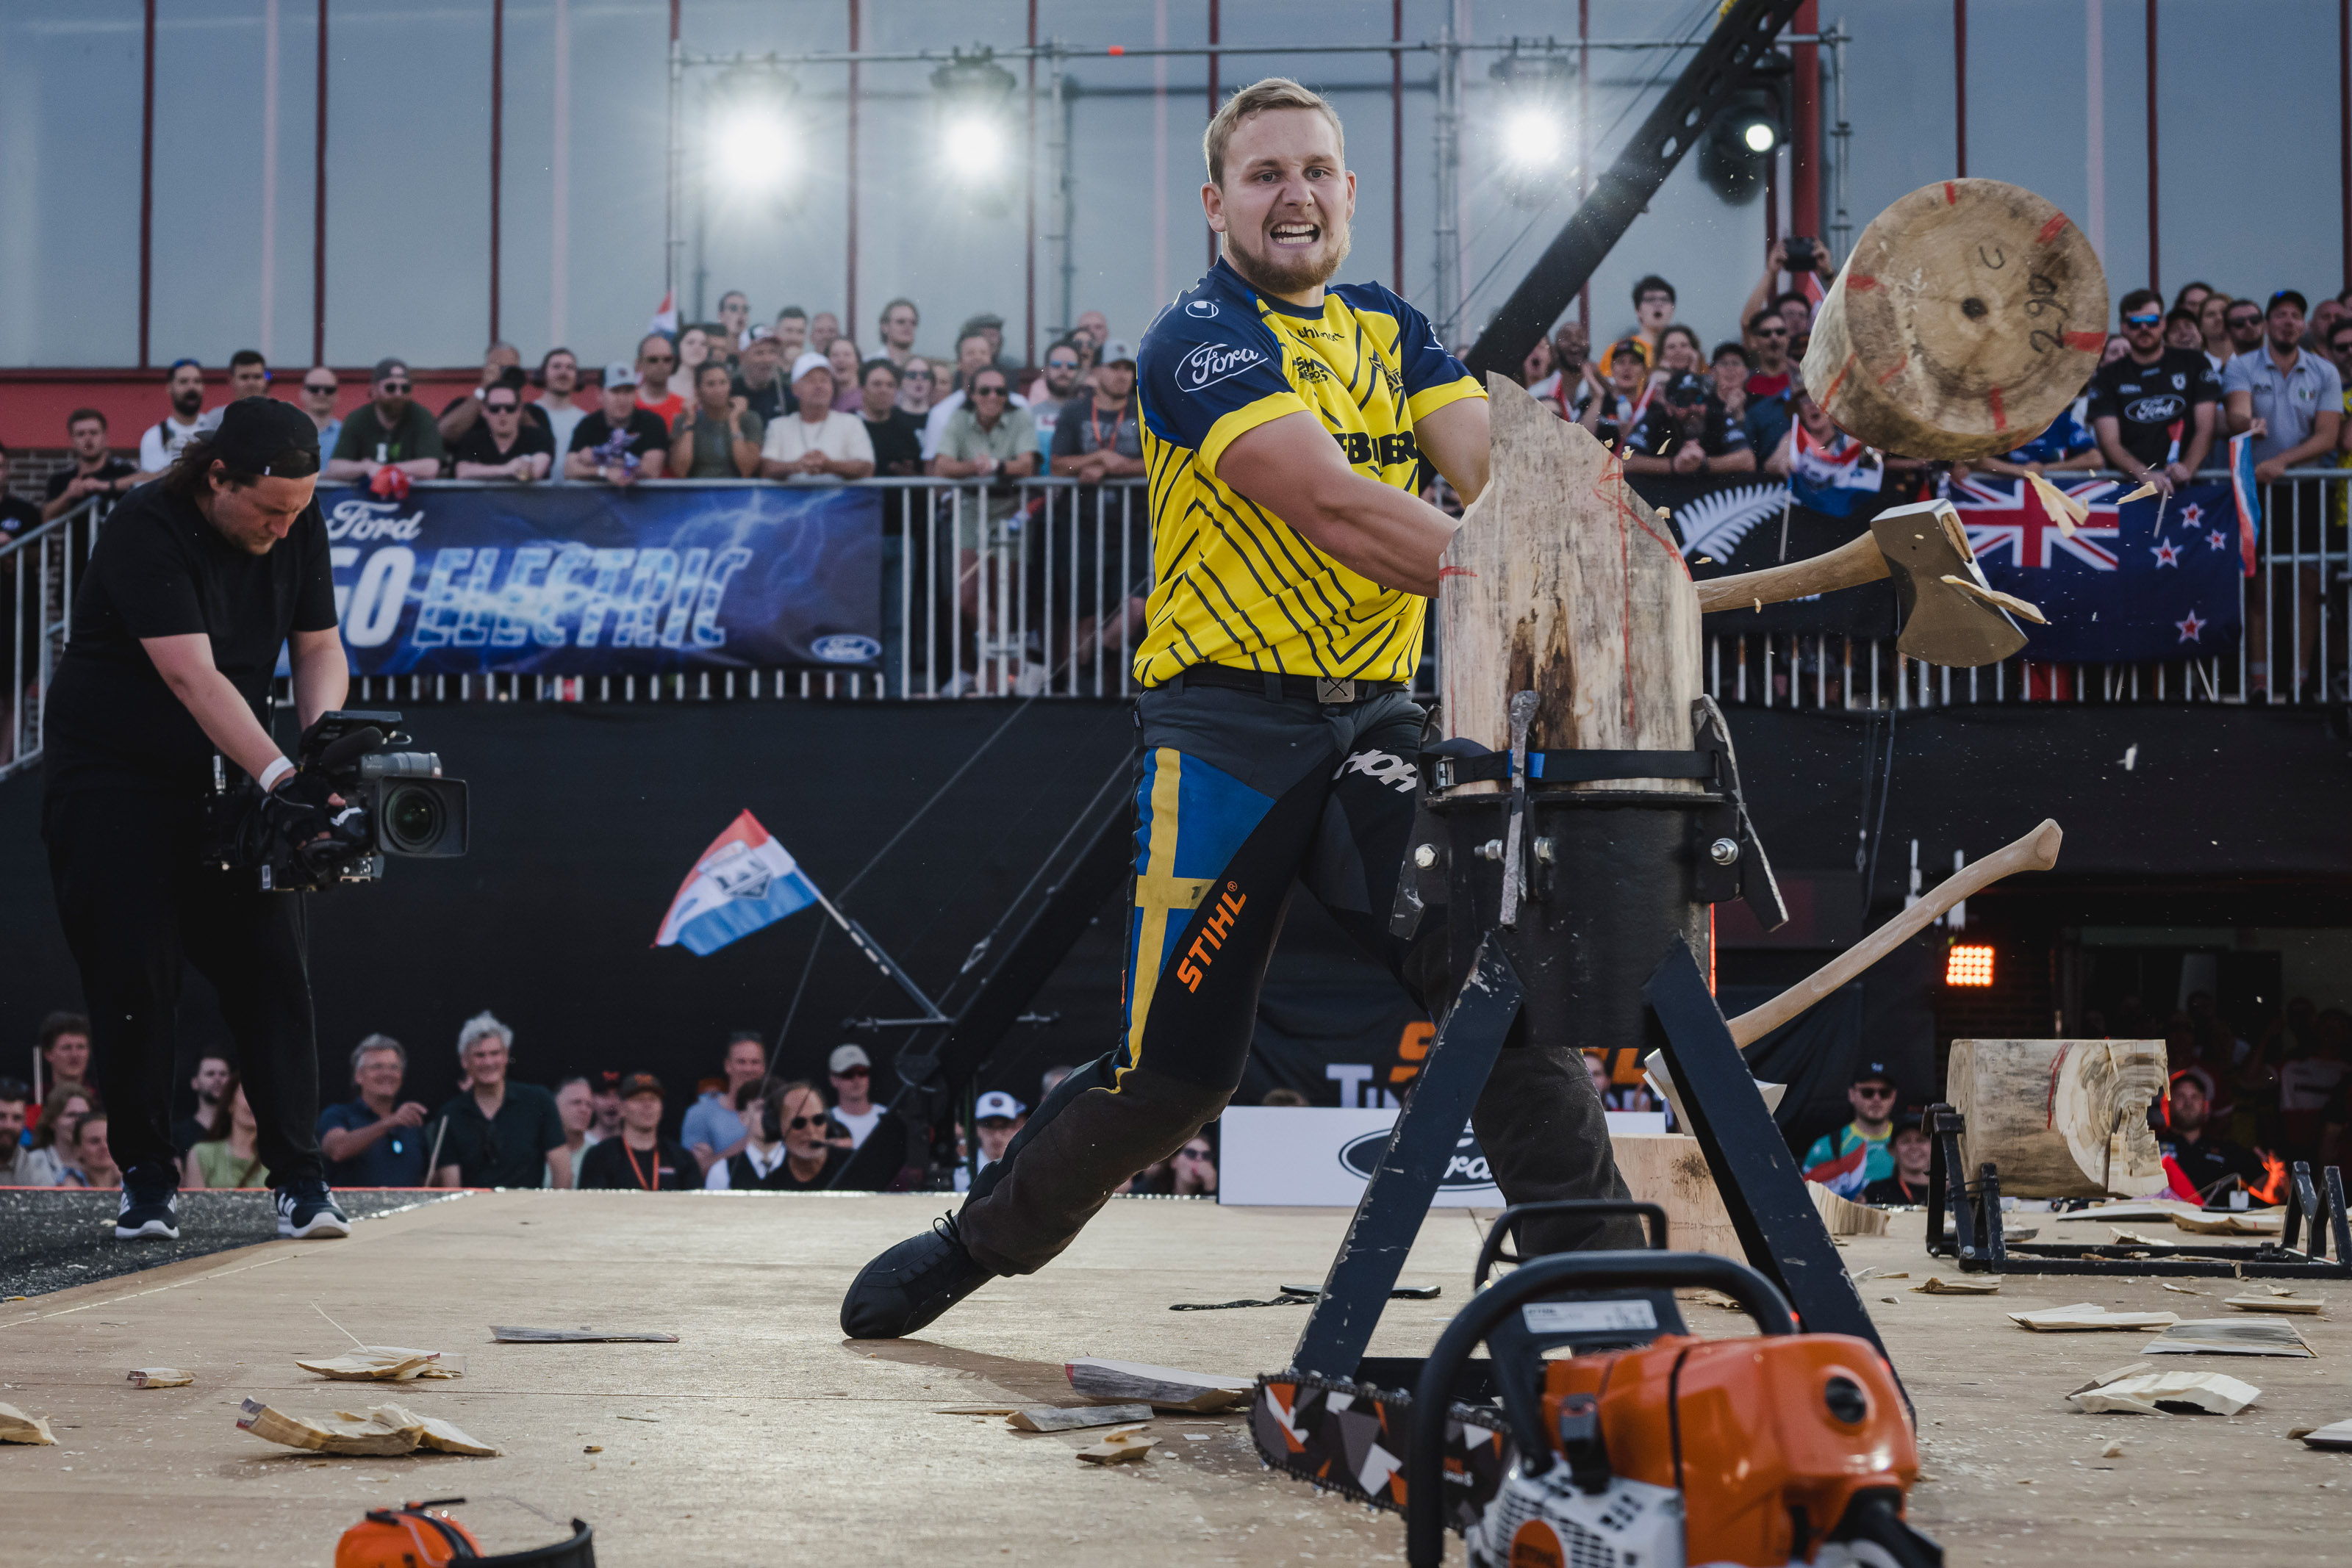 Le Suédois Emil Hansson fera tout pour défendre son titre. Ses capacités exceptionnelles dans l’épreuve du Standing Block Chop devraient notamment lui permettre de tirer son épingle du jeu.